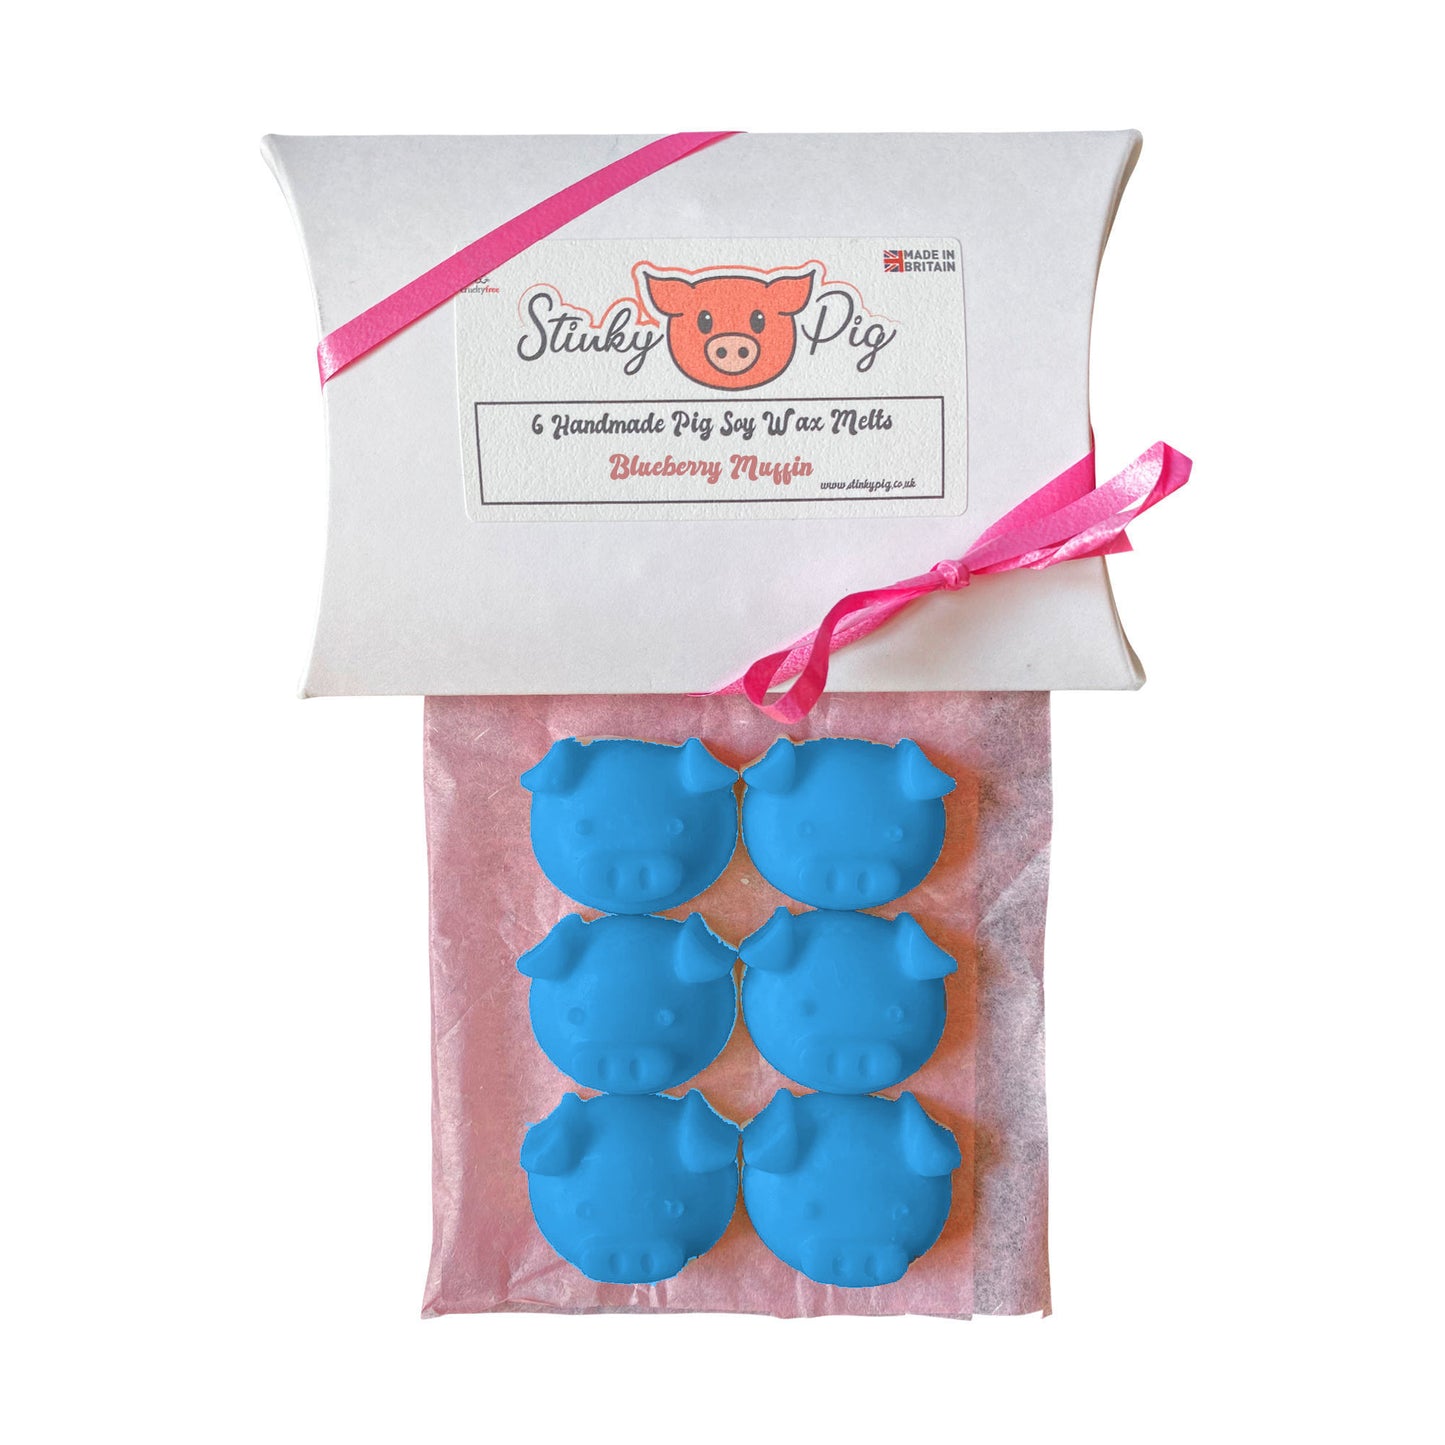 6 Blueberry Muffin Wax Melt Pigs